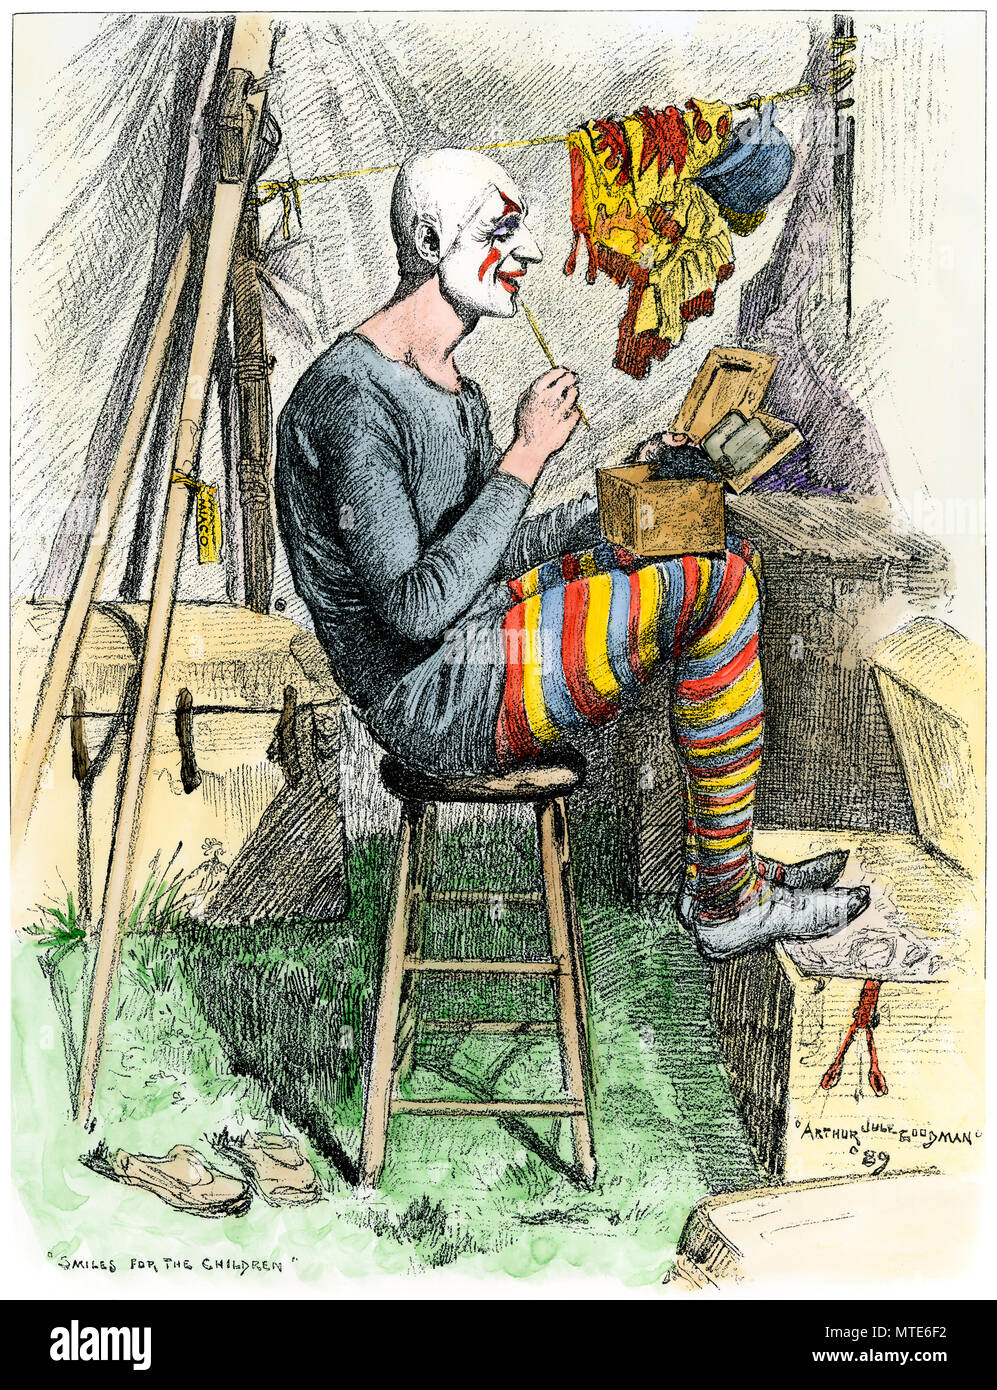 Payaso de circo pintar su cara en su tienda antes de un espectáculo, 1800. Xilografía coloreada a mano Foto de stock